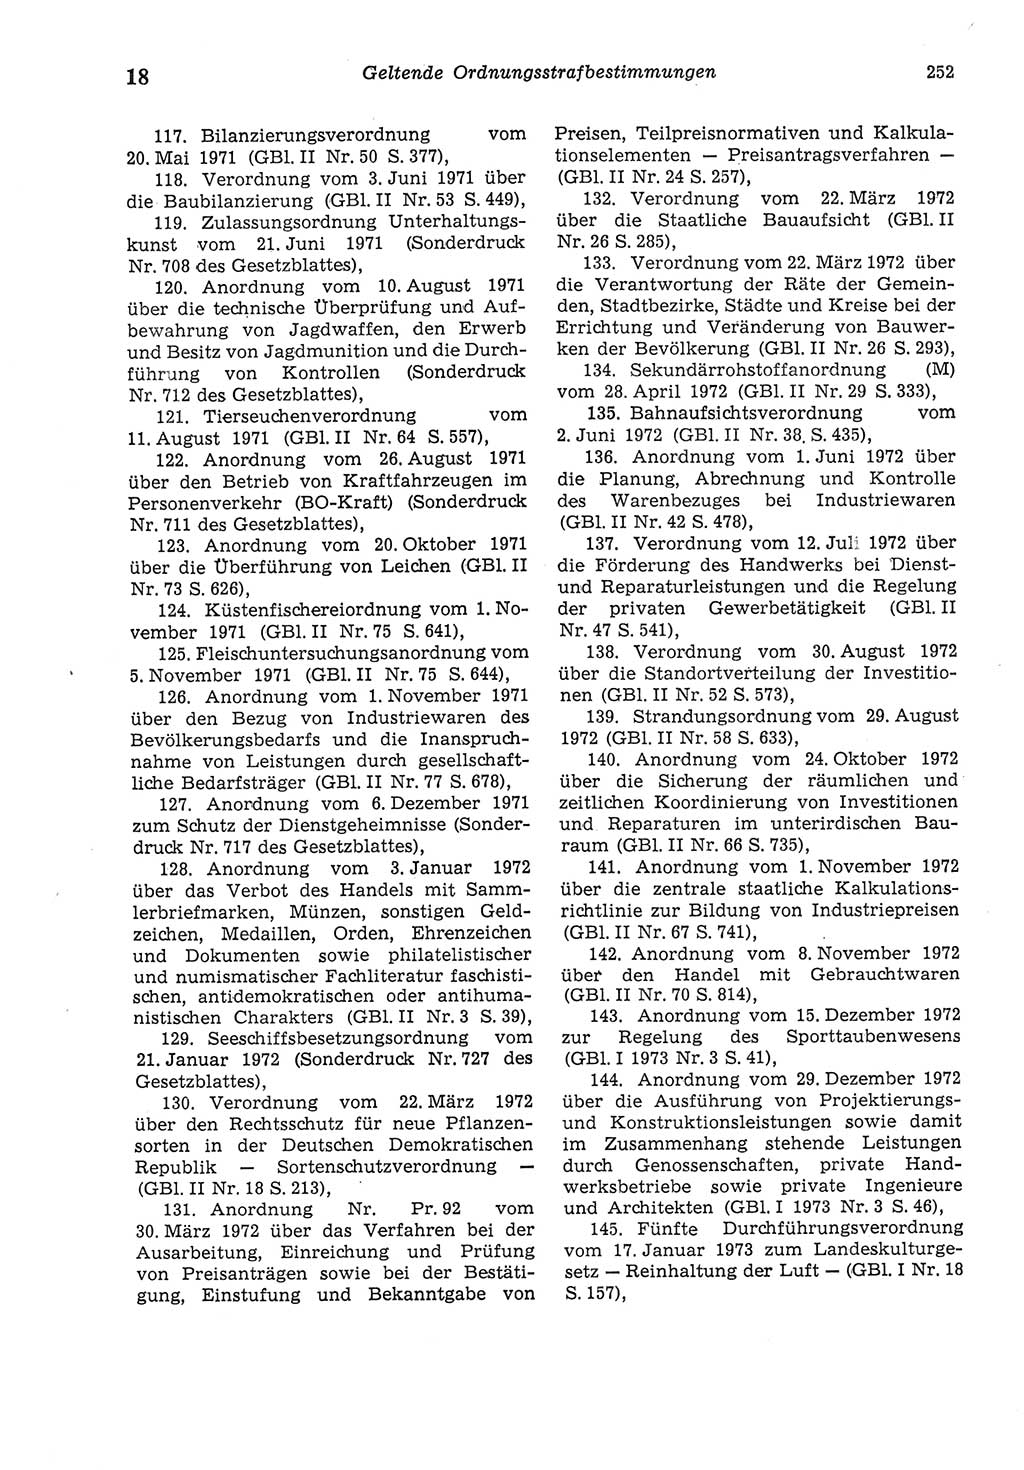 Strafgesetzbuch (StGB) der Deutschen Demokratischen Republik (DDR) und angrenzende Gesetze und Bestimmungen 1975, Seite 252 (StGB DDR Ges. Best. 1975, S. 252)